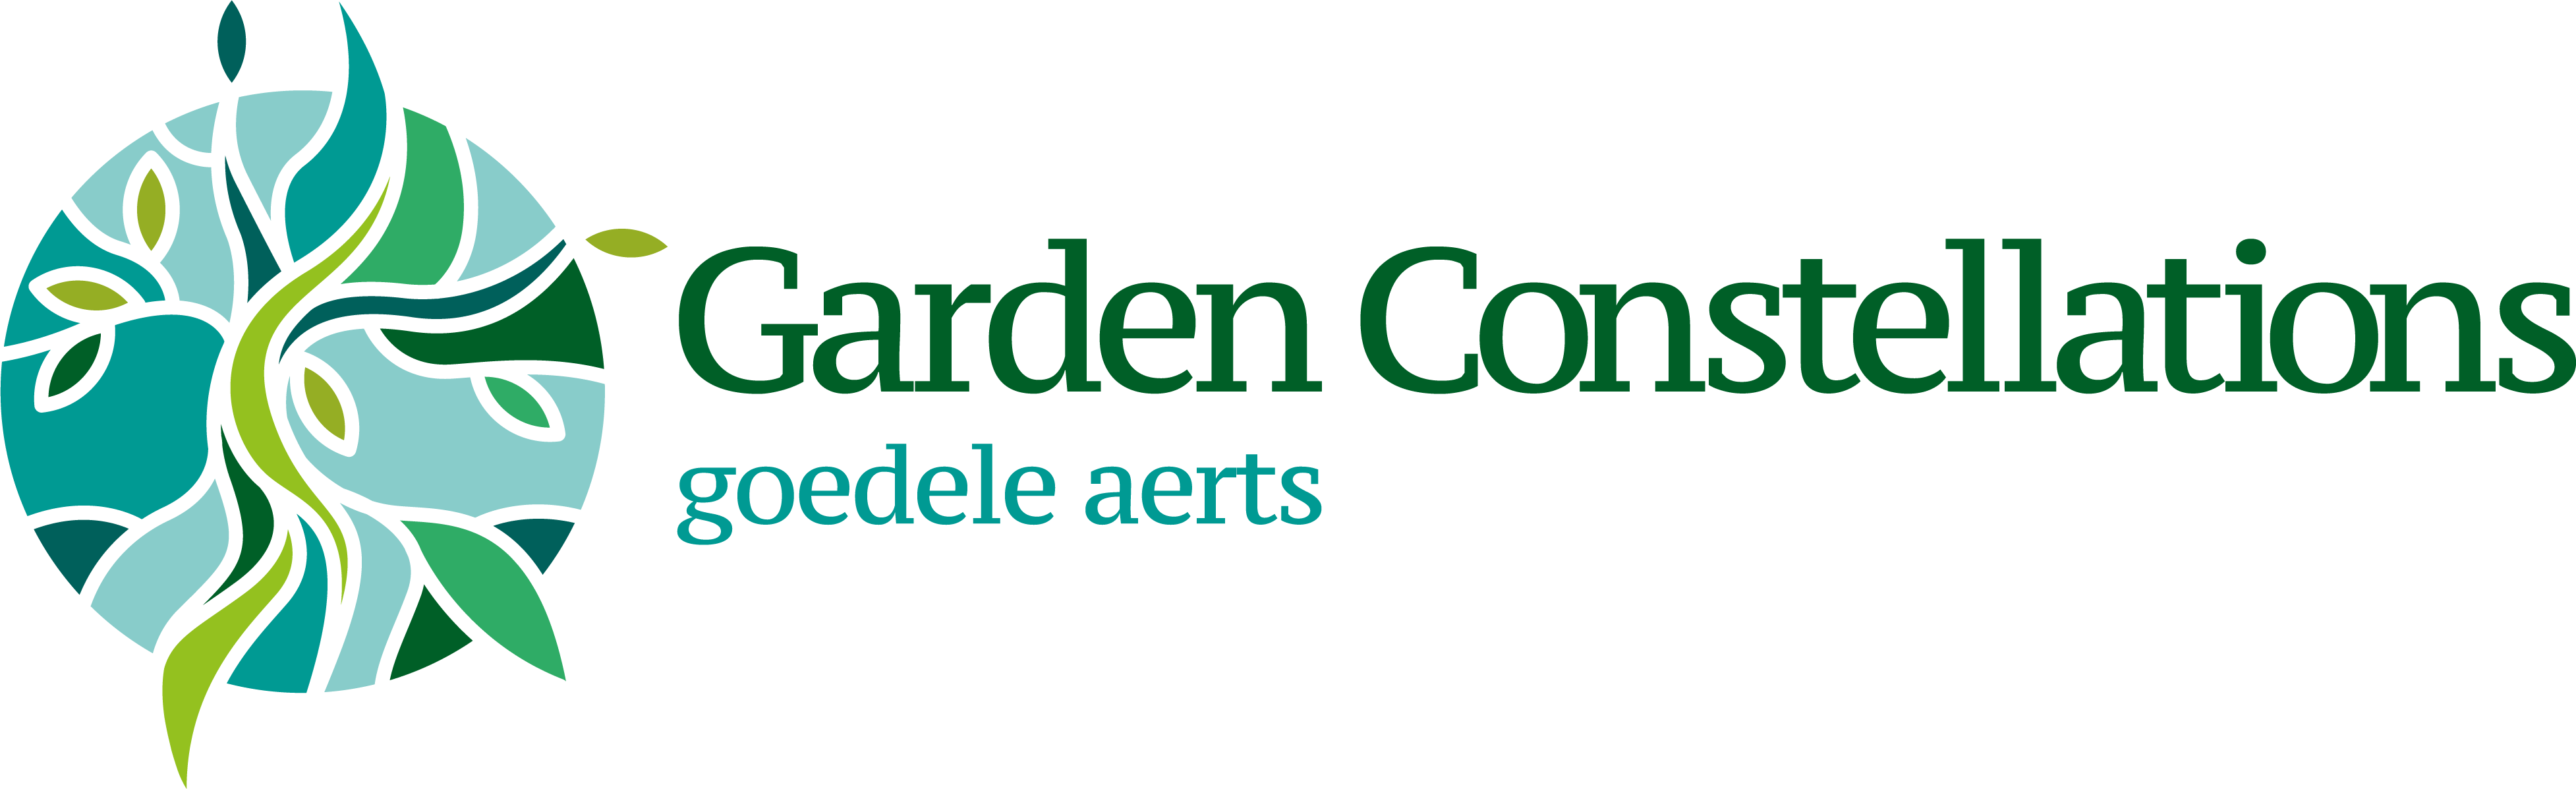 Garden Constellations logo